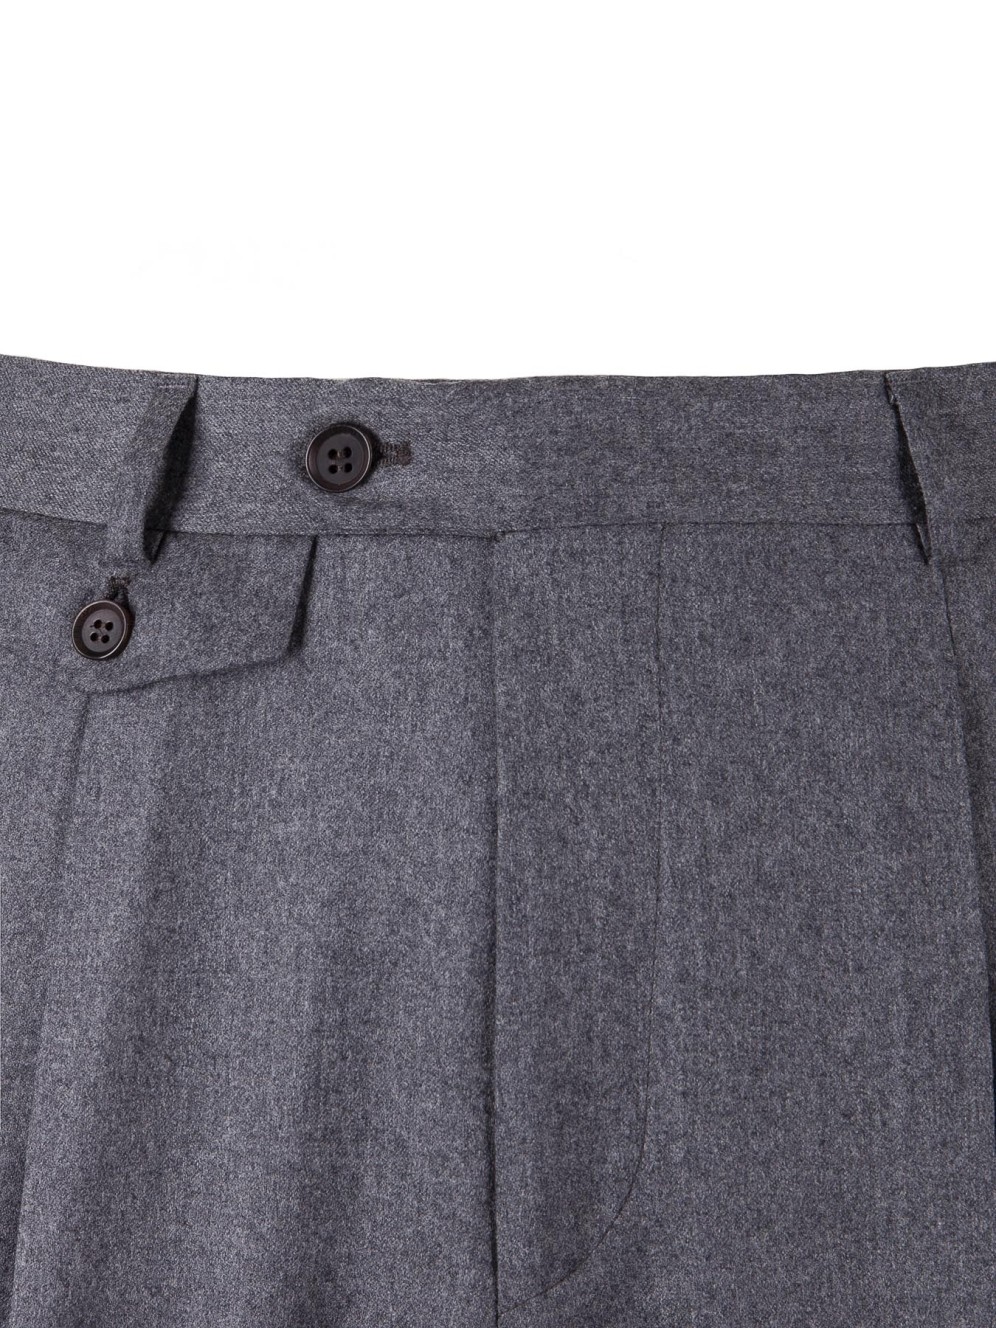 Balmoral Trouser | Charcoal Plain